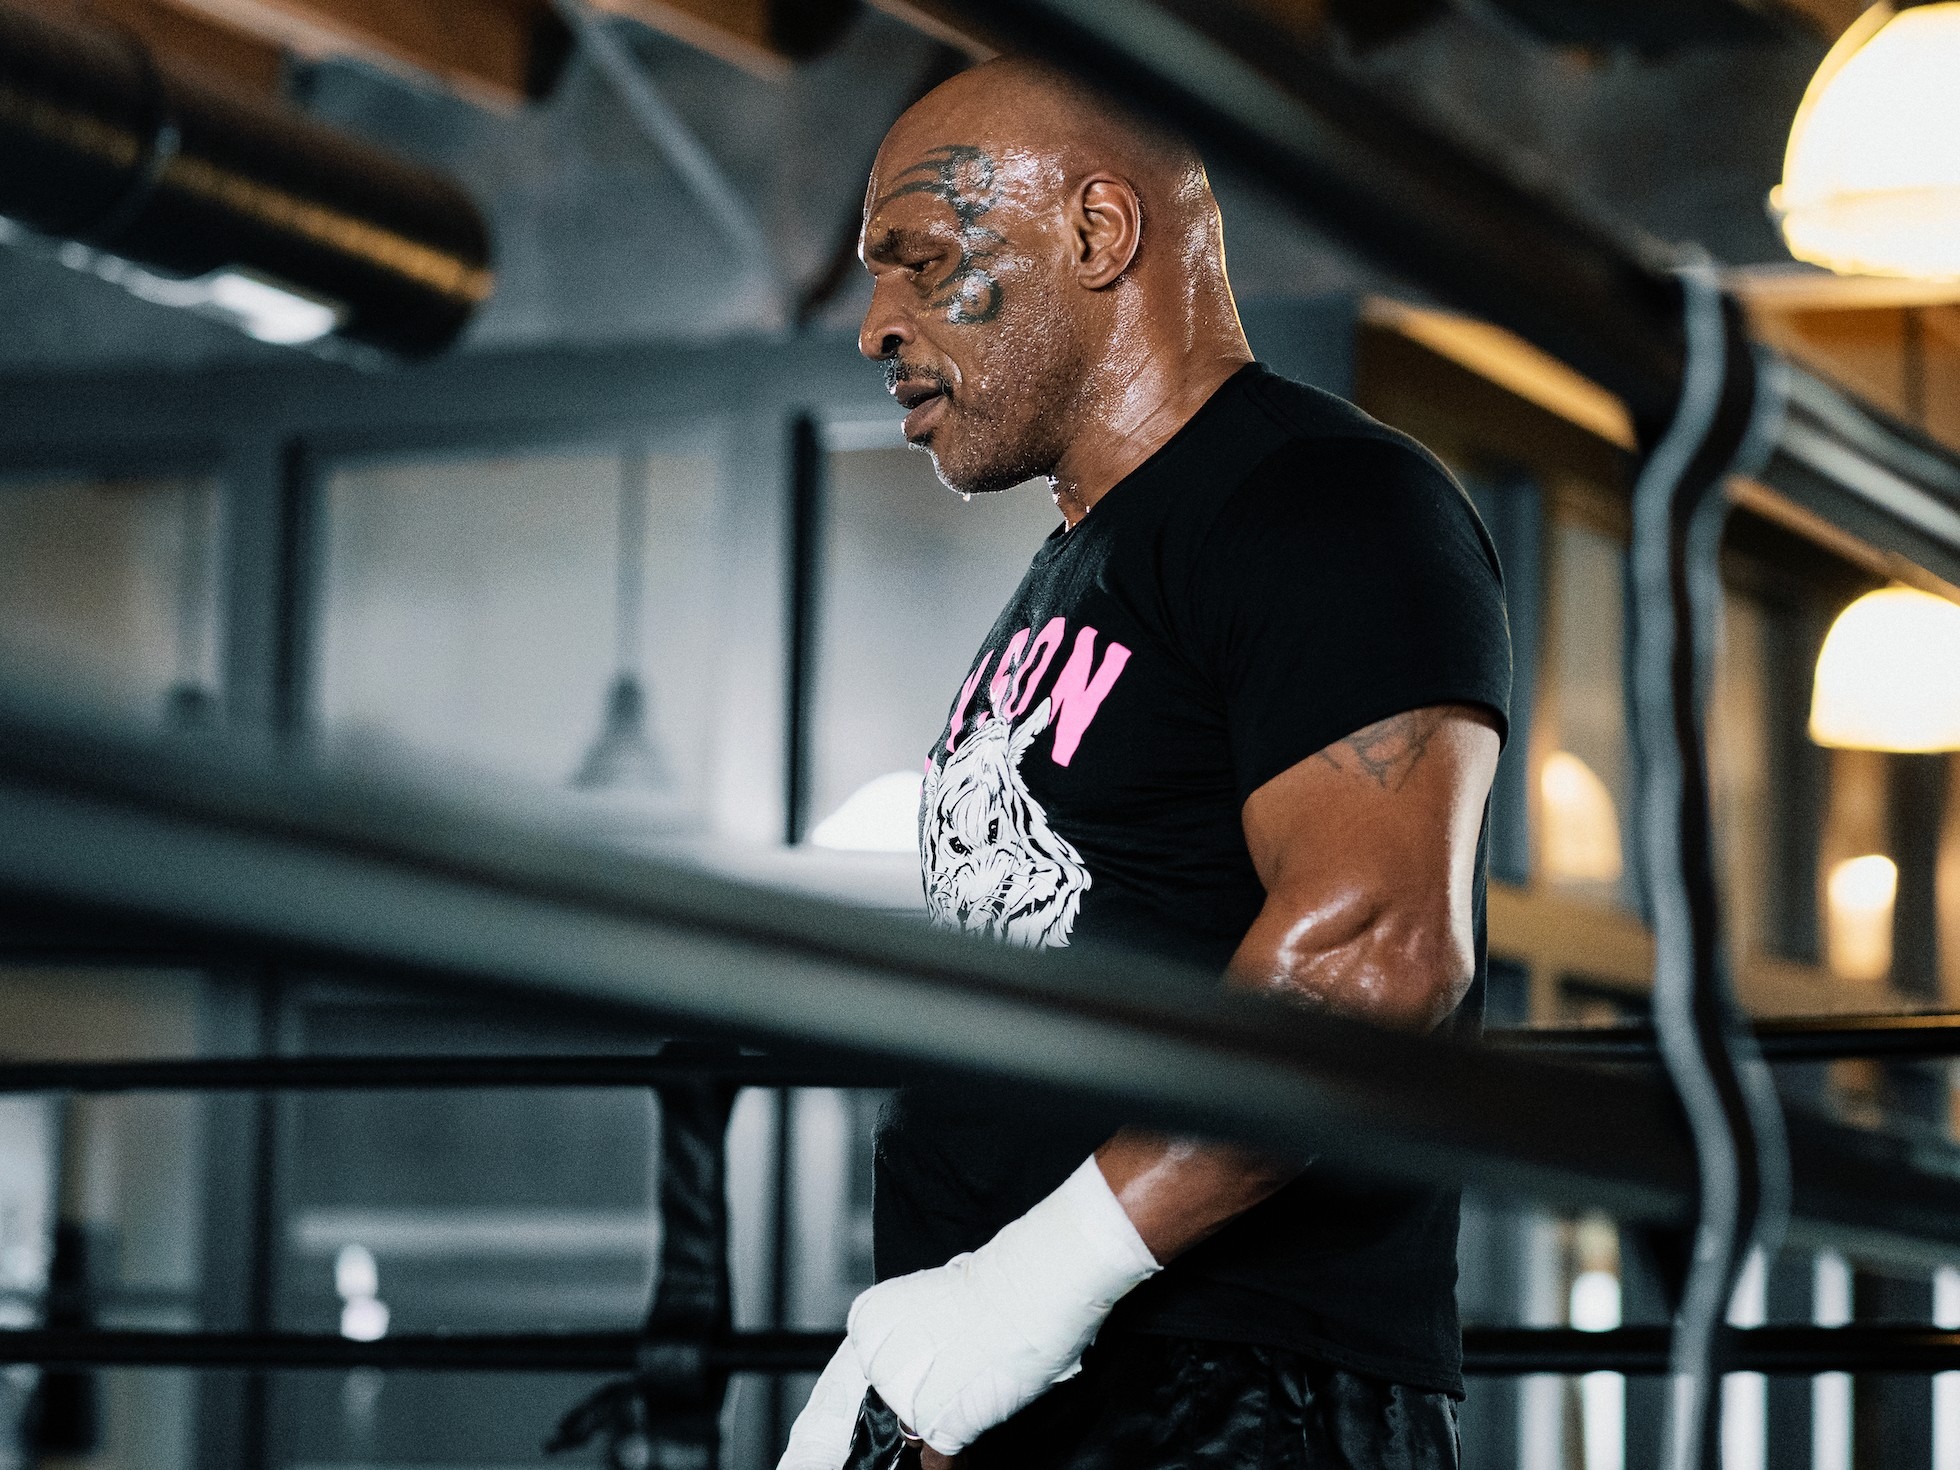 Huyền thoại Mike Tyson gây sốc khi thượng đài với võ sĩ kém 30 tuổi